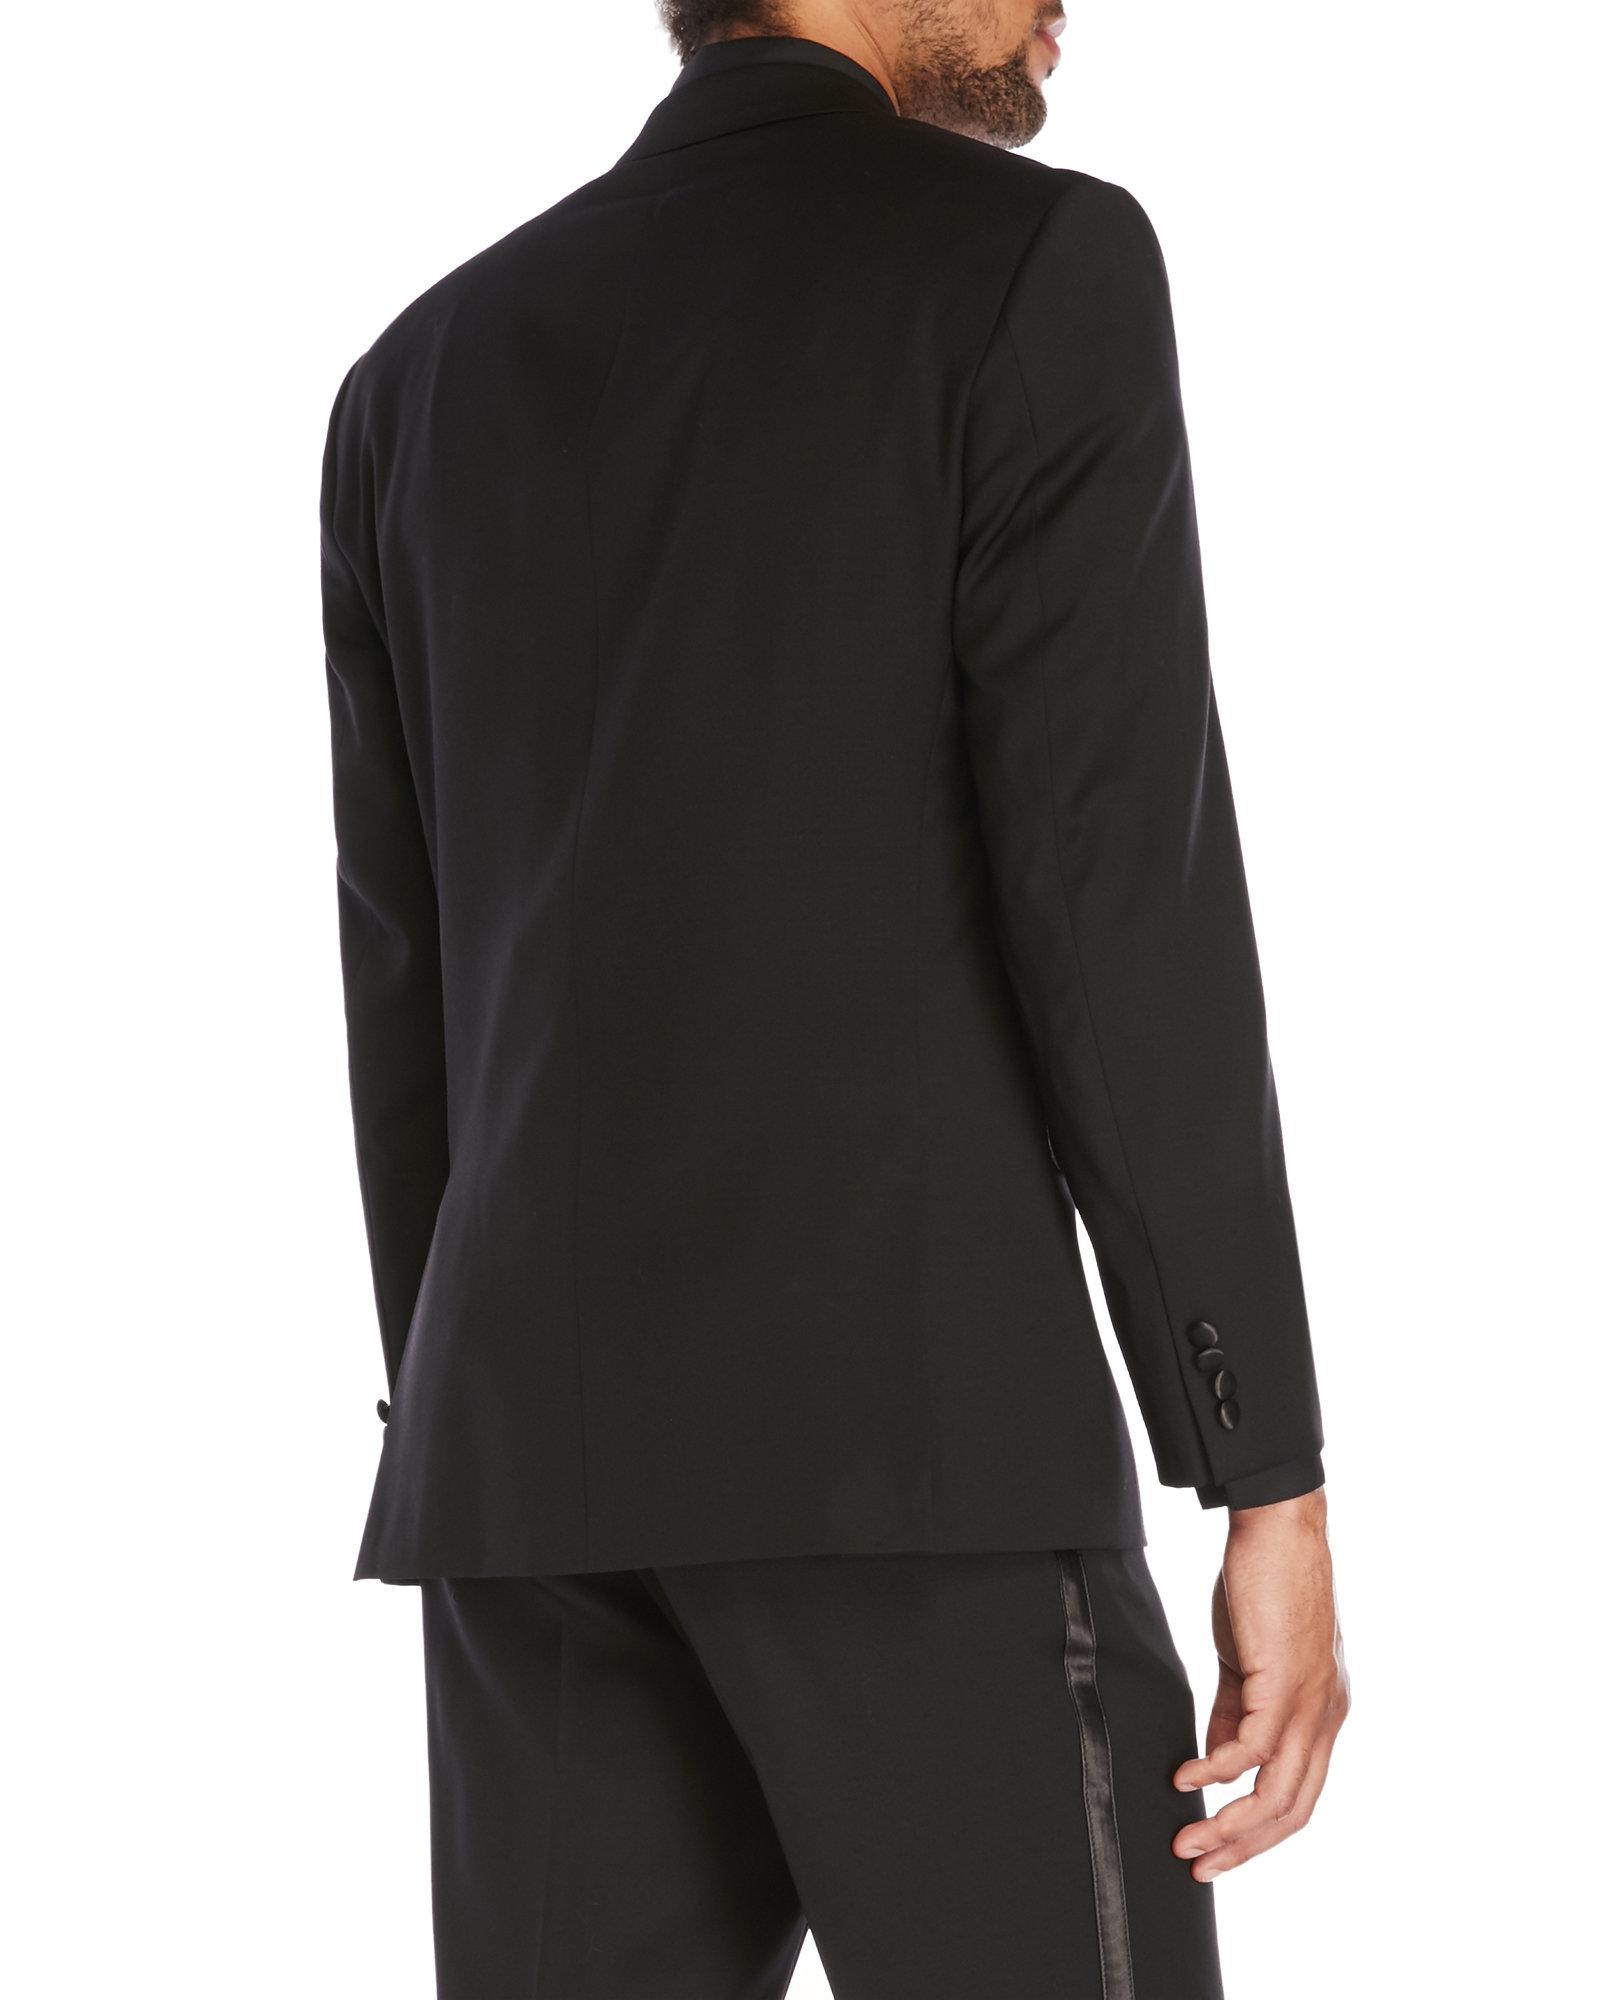 Calvin Klein Myer Slim Fit Wool Tuxedo in Black for Men - Lyst